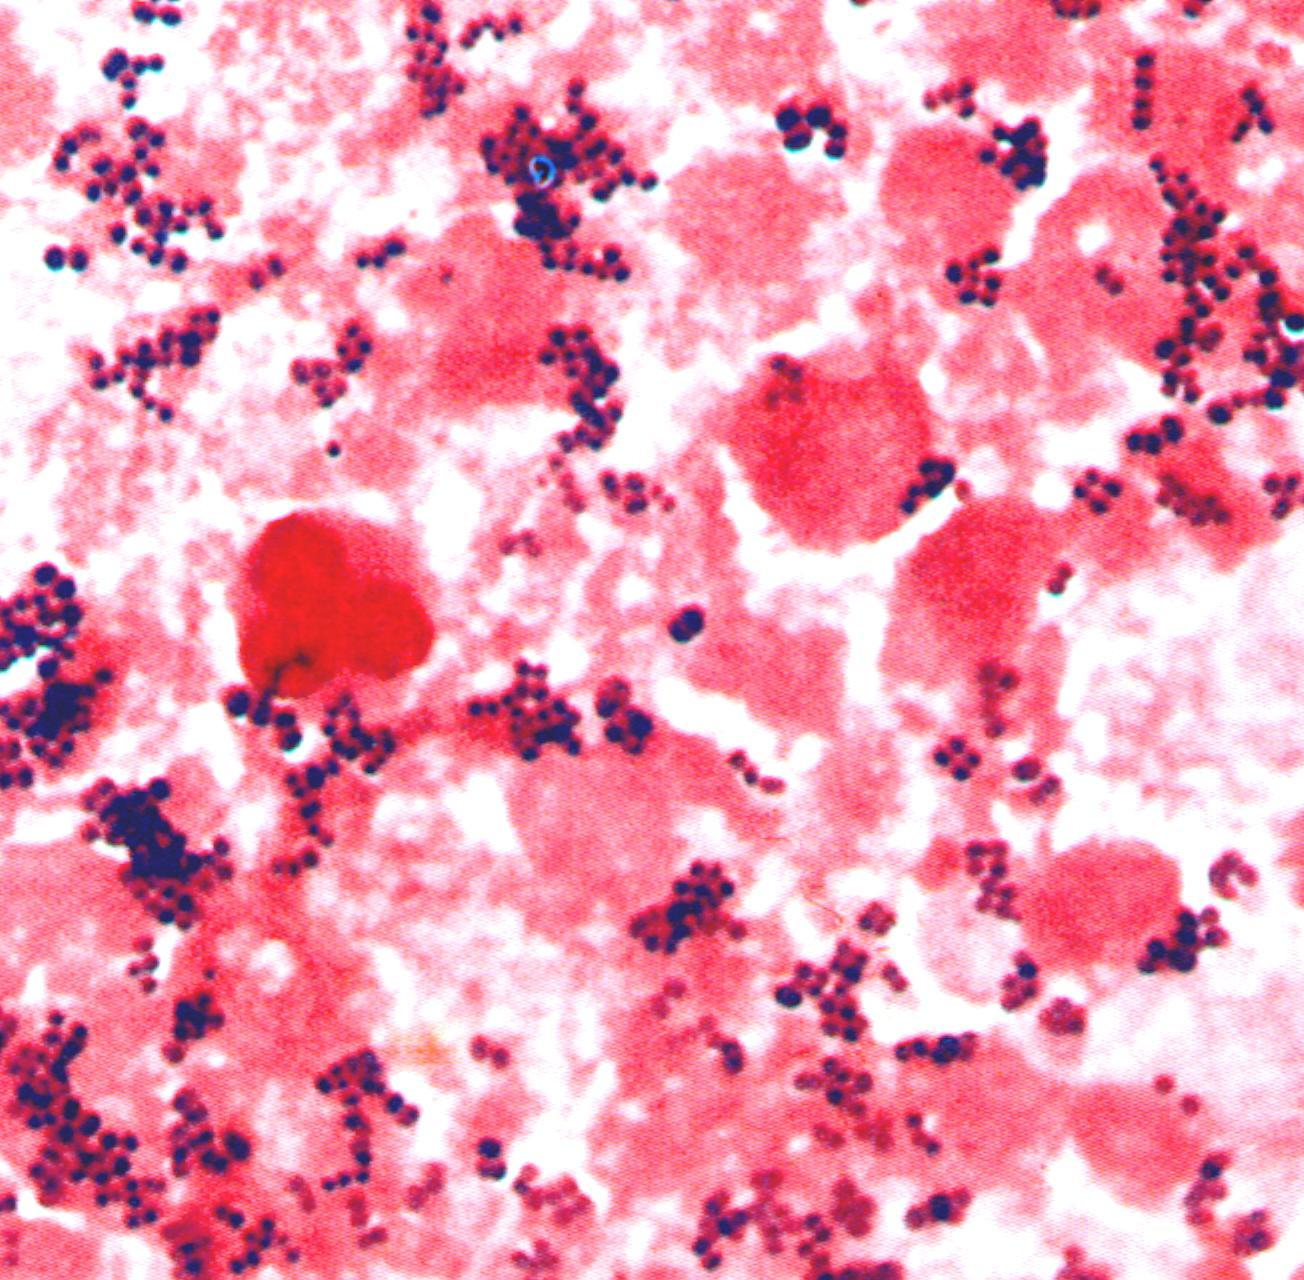 1 staphylococcus aureus. Бактериоскопический метод стафилококков. Стафилококк золотистый микроскопирование. Бактериоскопия стафилококк. Менингитный стафилококк.